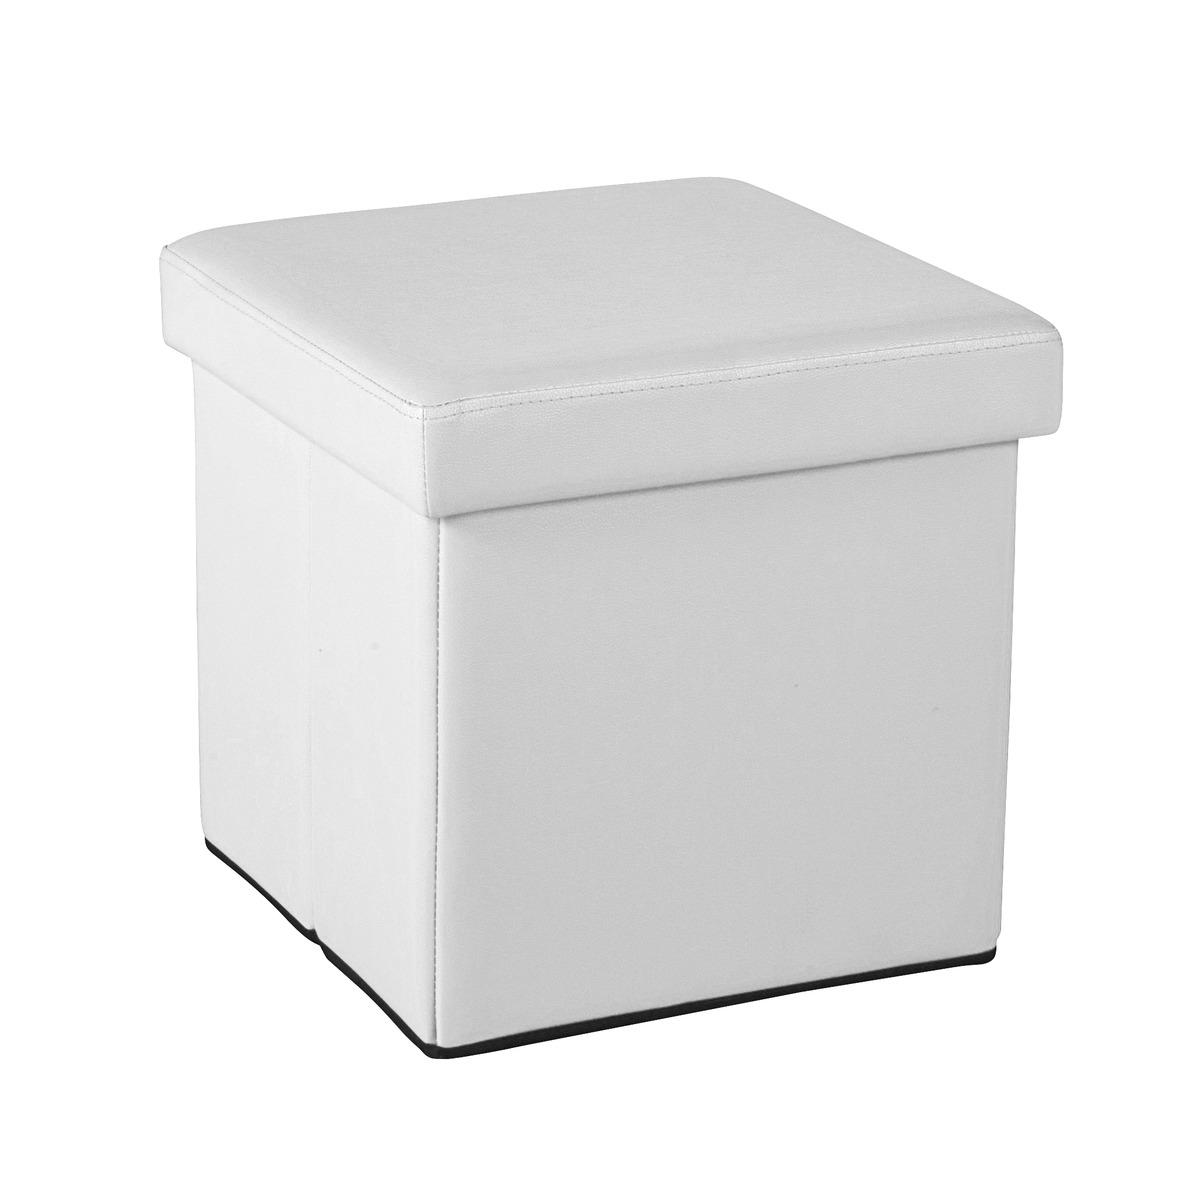 Pouf coffre cube - Blanc - 38 x 38 x 37 cm